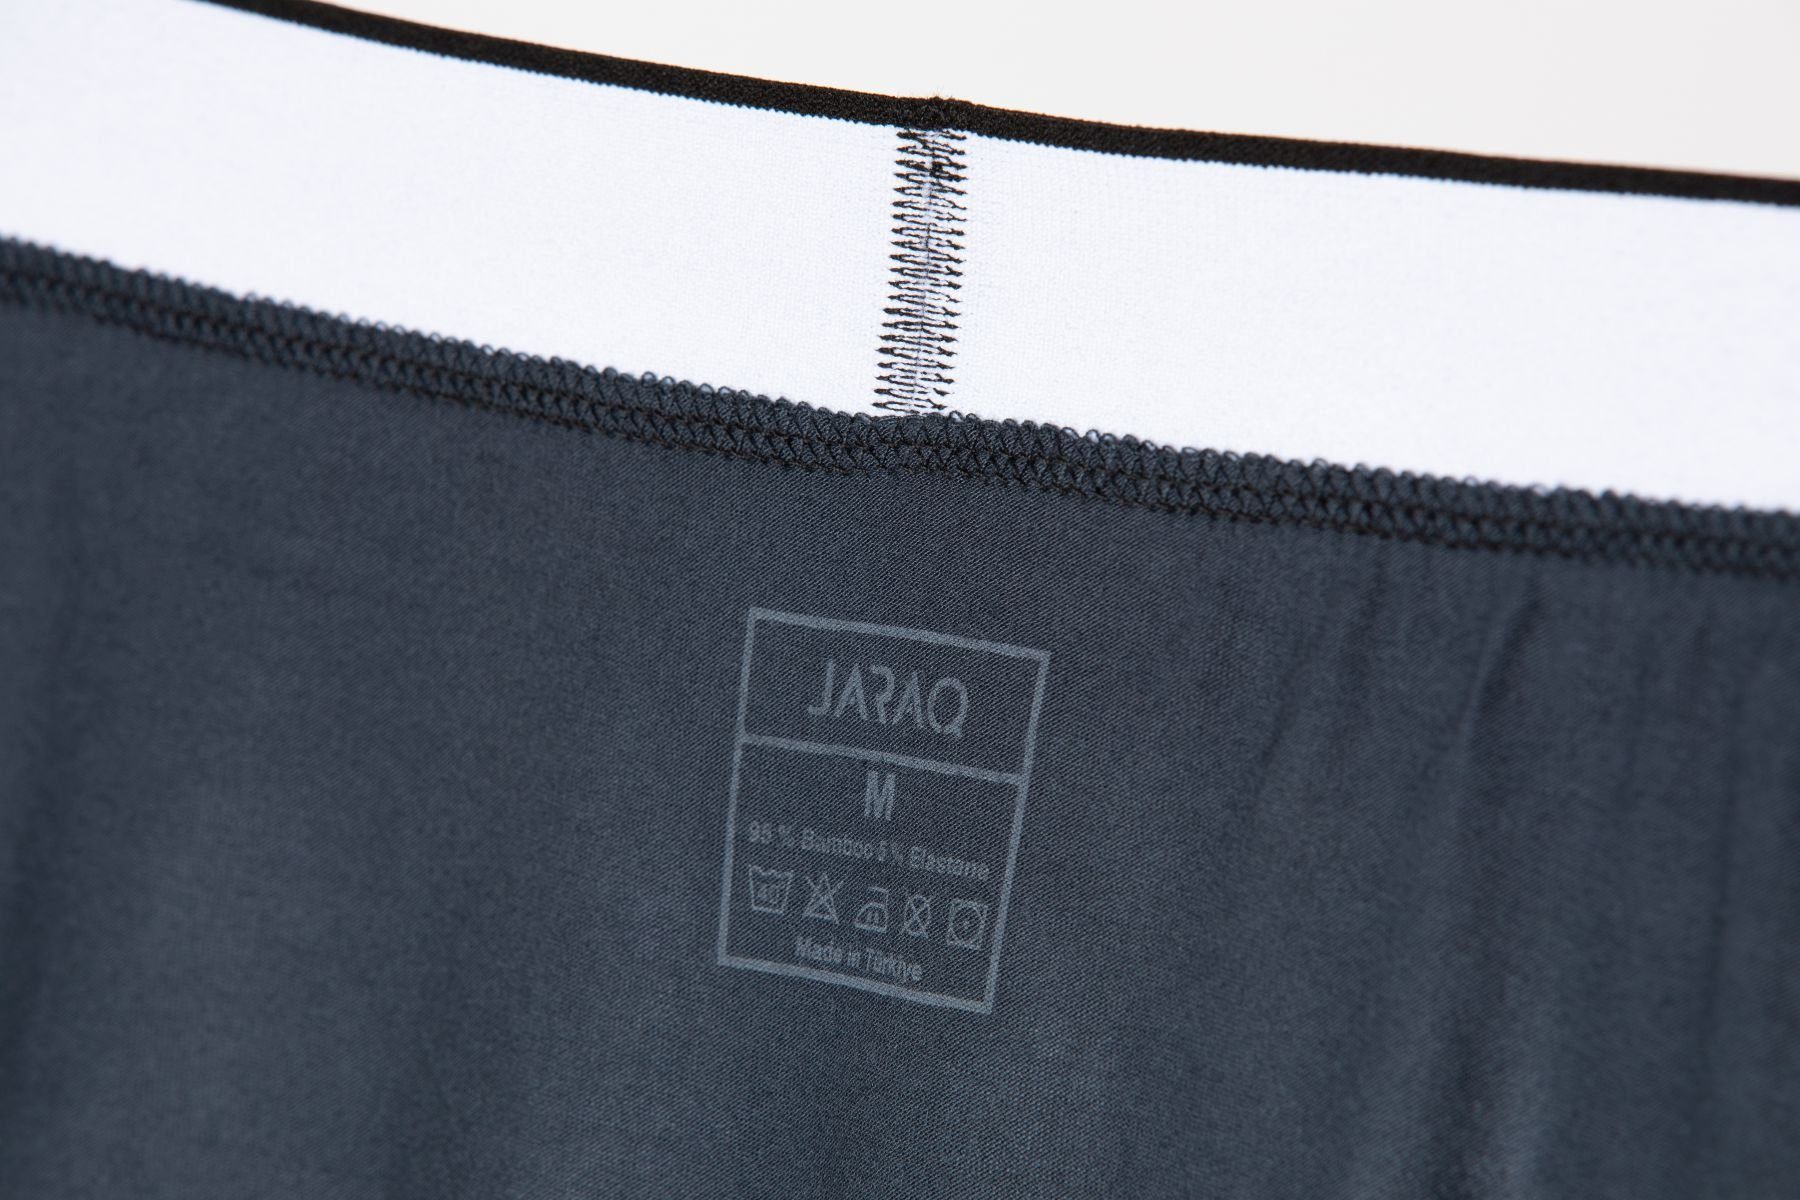 Unterhosen Boxershorts Herren Pack Passform Boxer JARAQ Perfekte Petrol Bambus für JARAQ 4XL 6er - S Männer